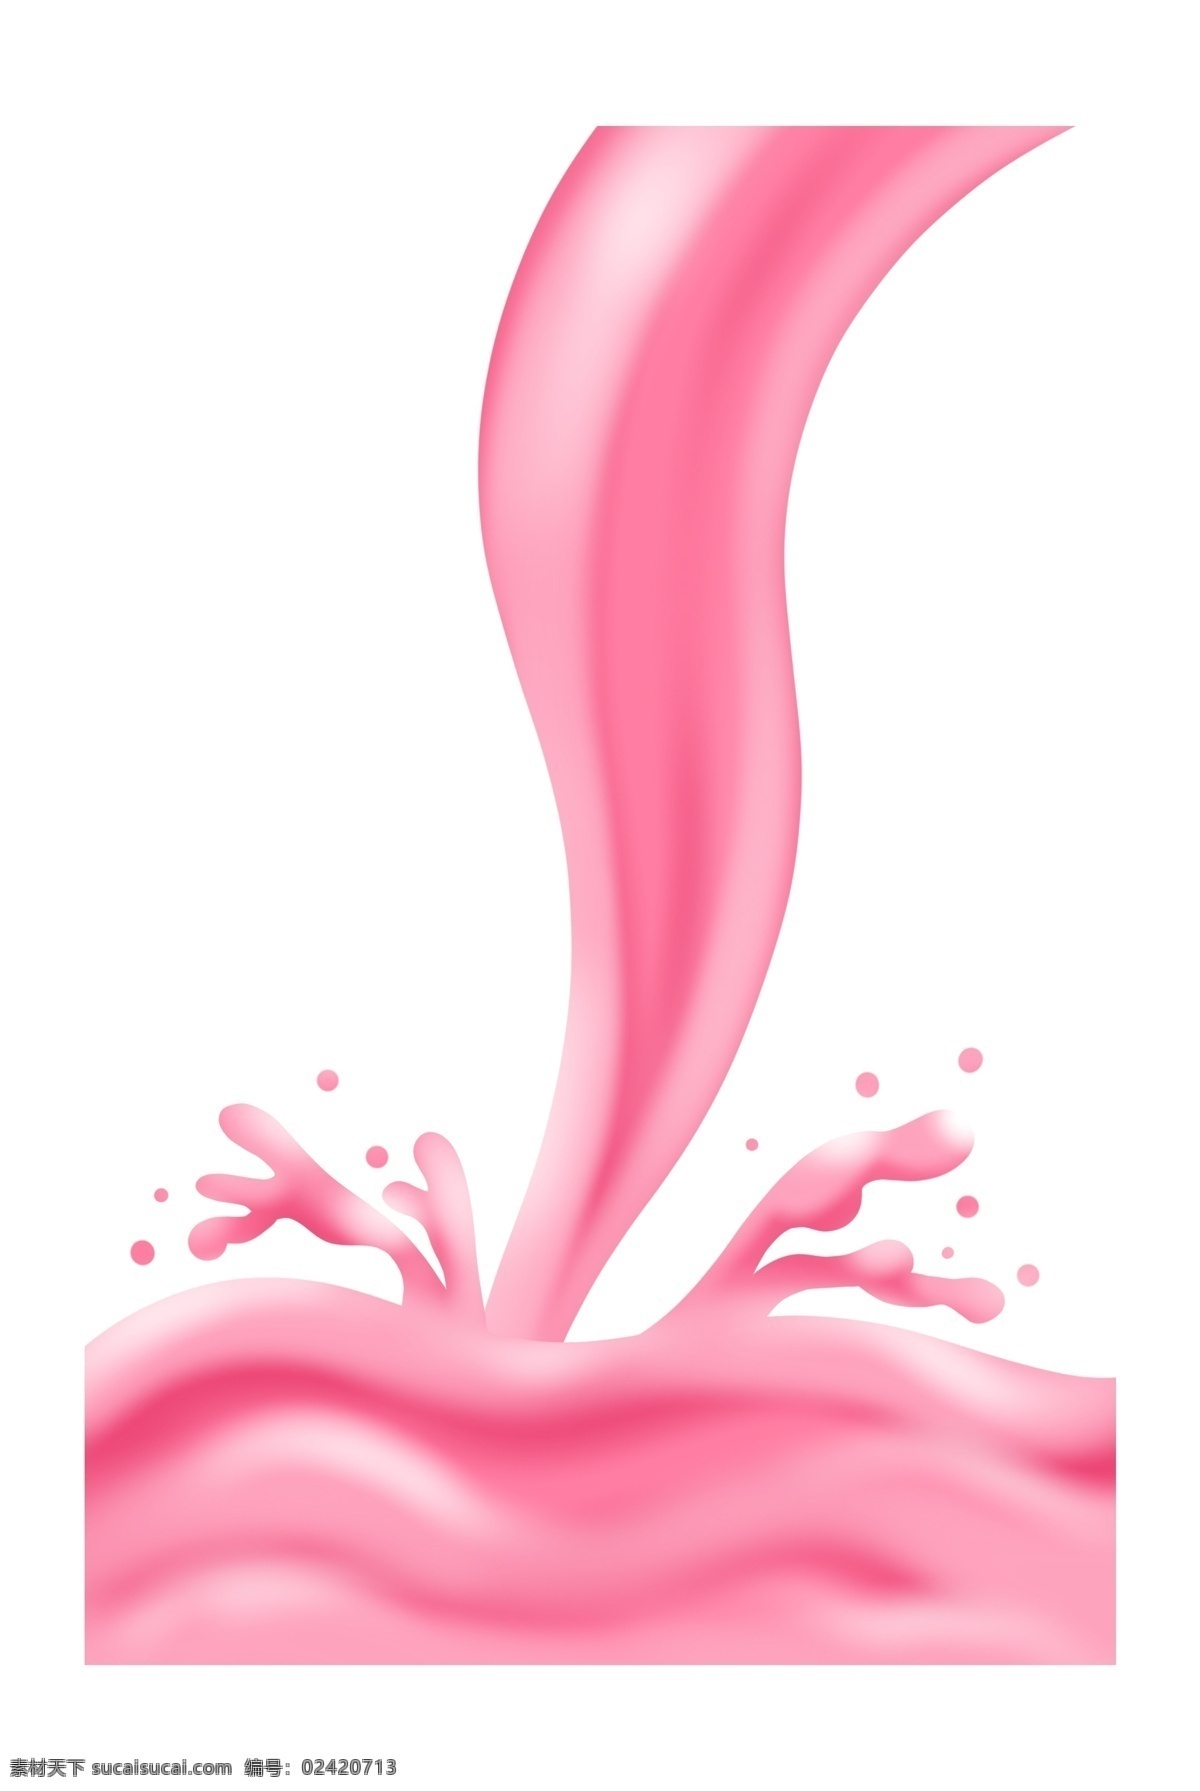 倒下 飞溅 液体 倒下的液体 果汁 飞溅的液体 可口的 浓浓的 粉色的果汁 饮品 粉色液体 创意